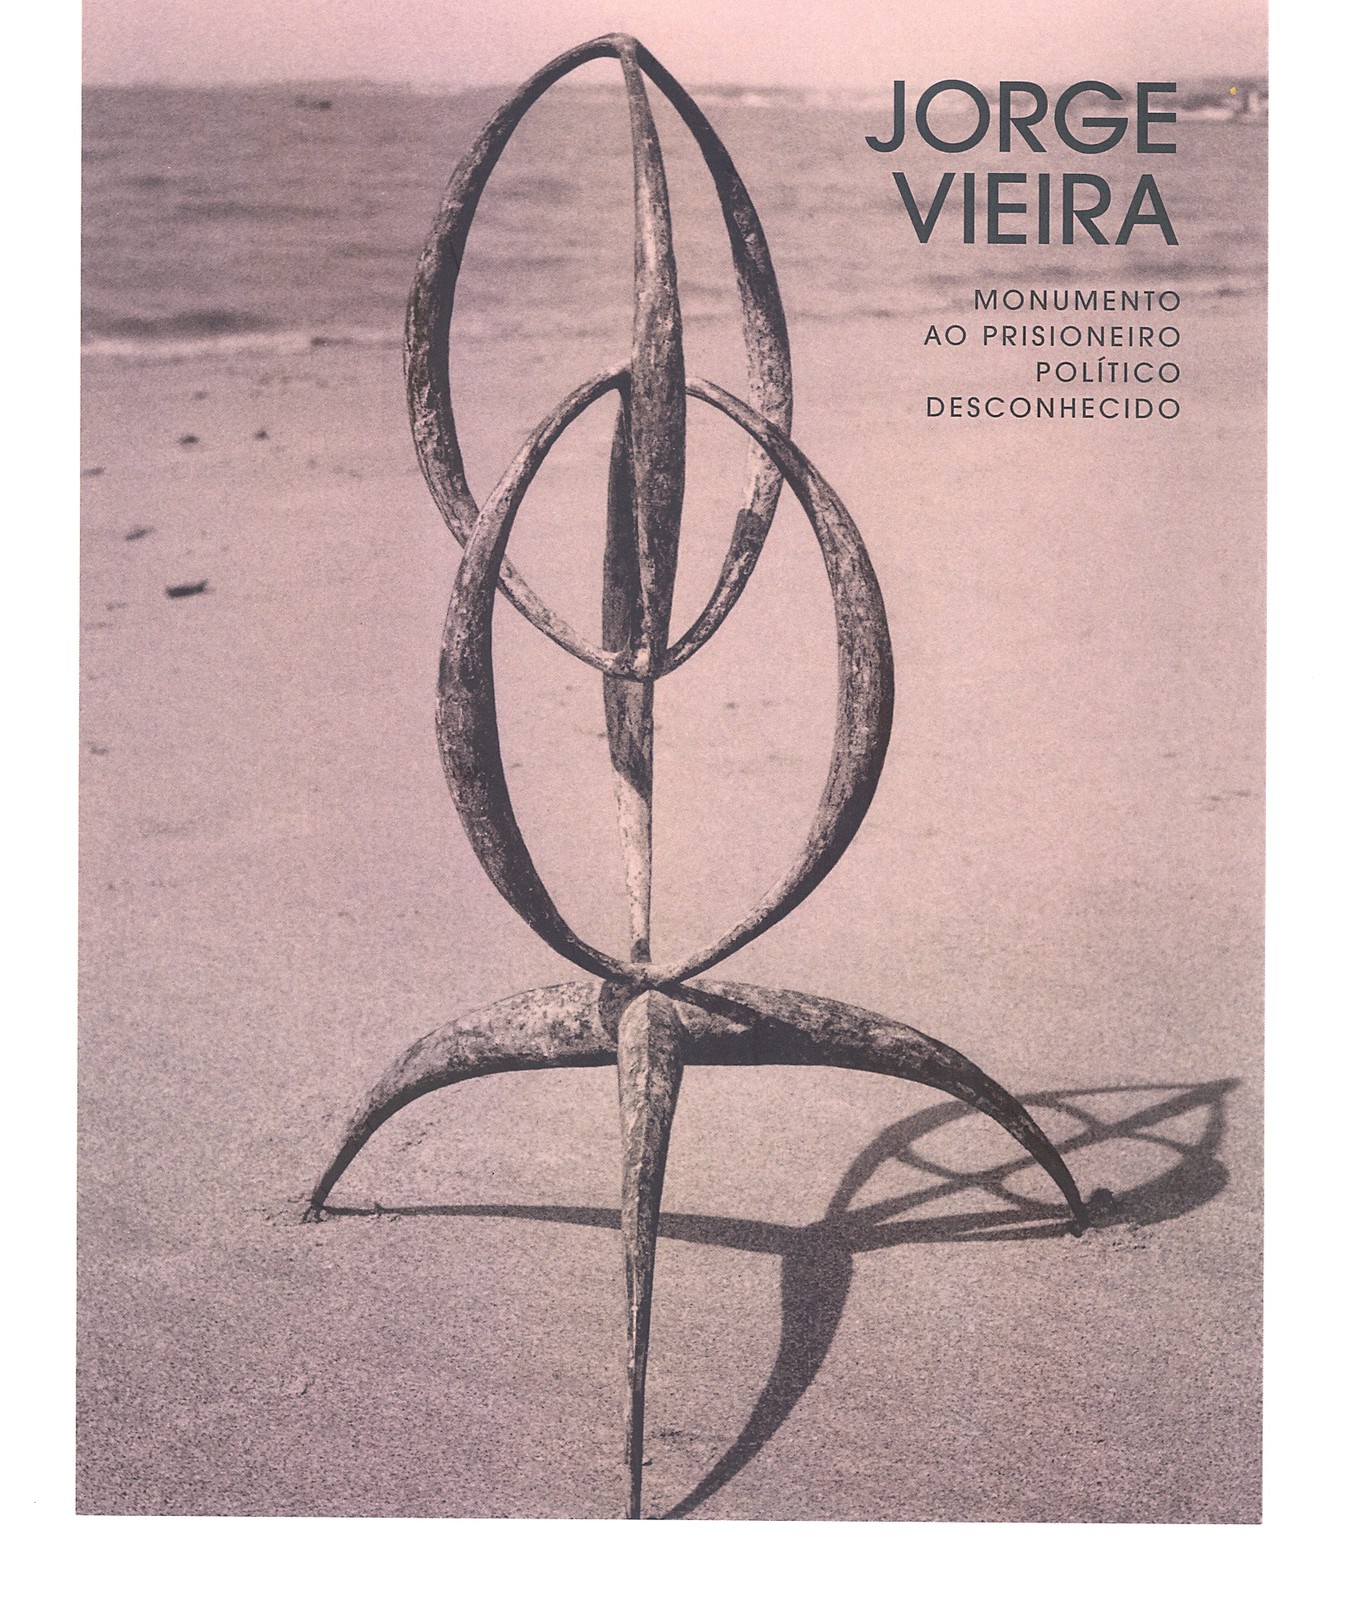 Catálogo da exposição Jorge Vieira, Monumento ao Prisioneiro Político Desconhecido